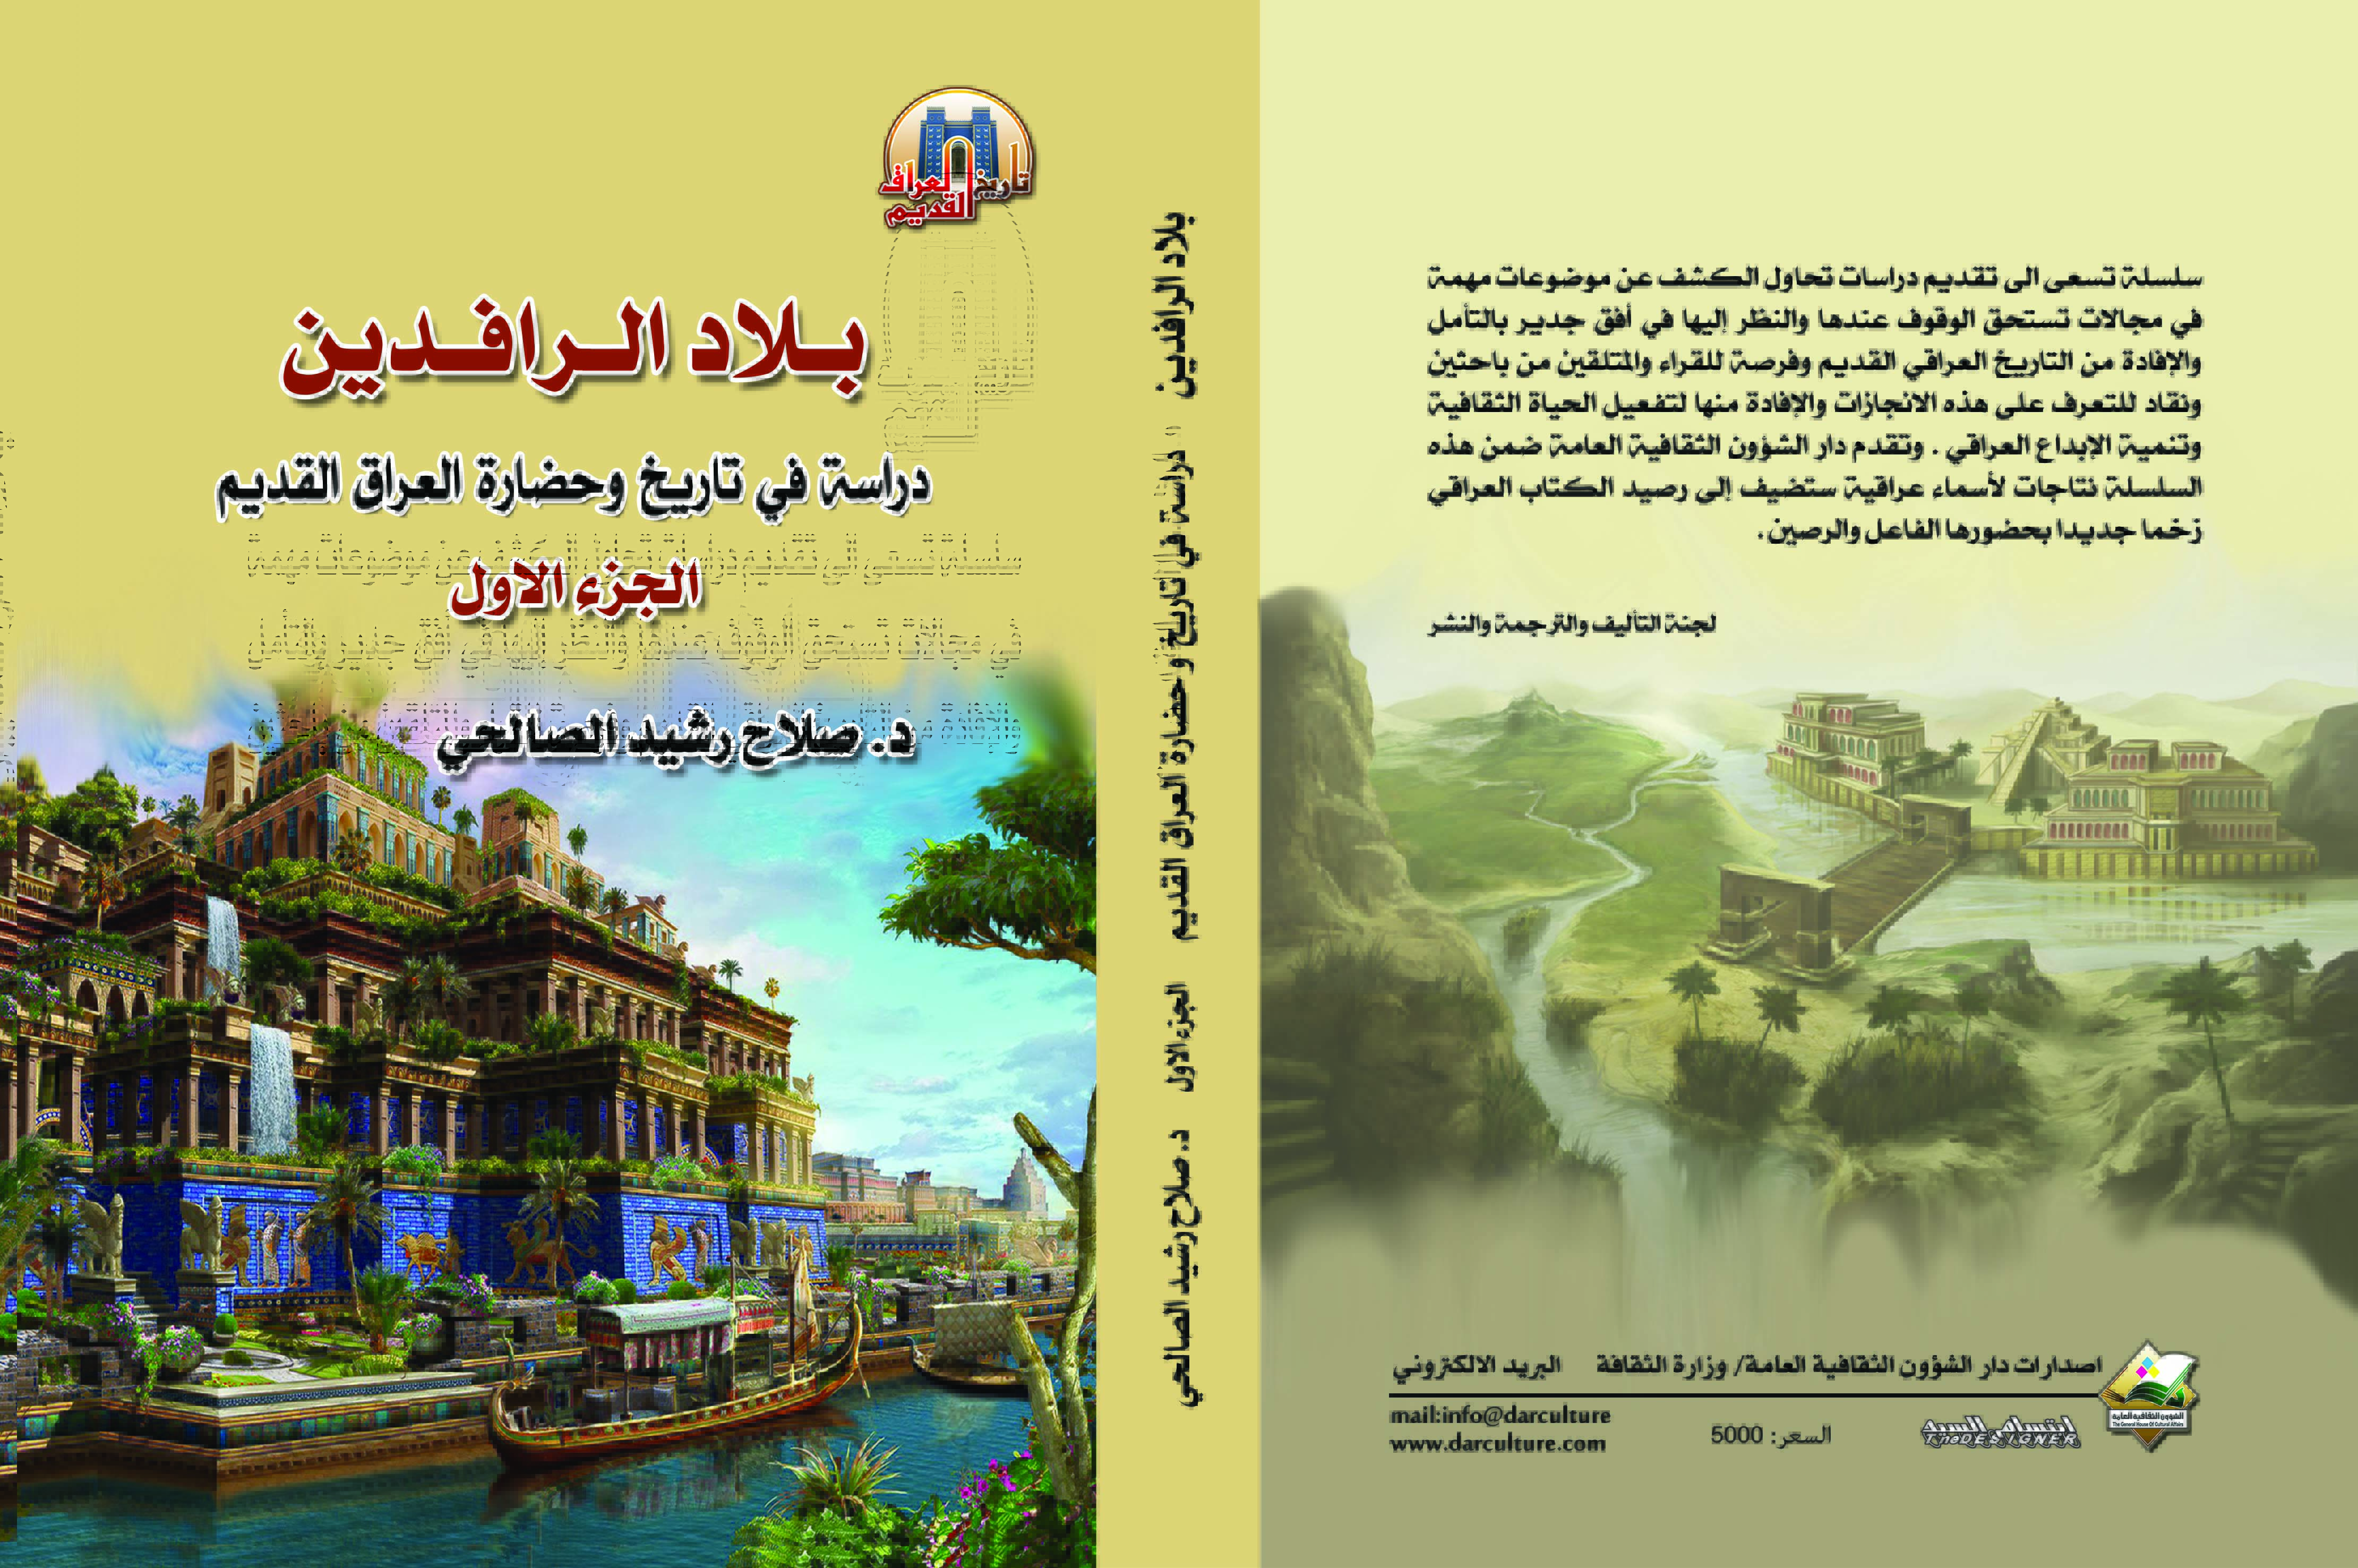 بلاد الرافدين دراسة في تاريخ وحضارة العراق القديم كتابات